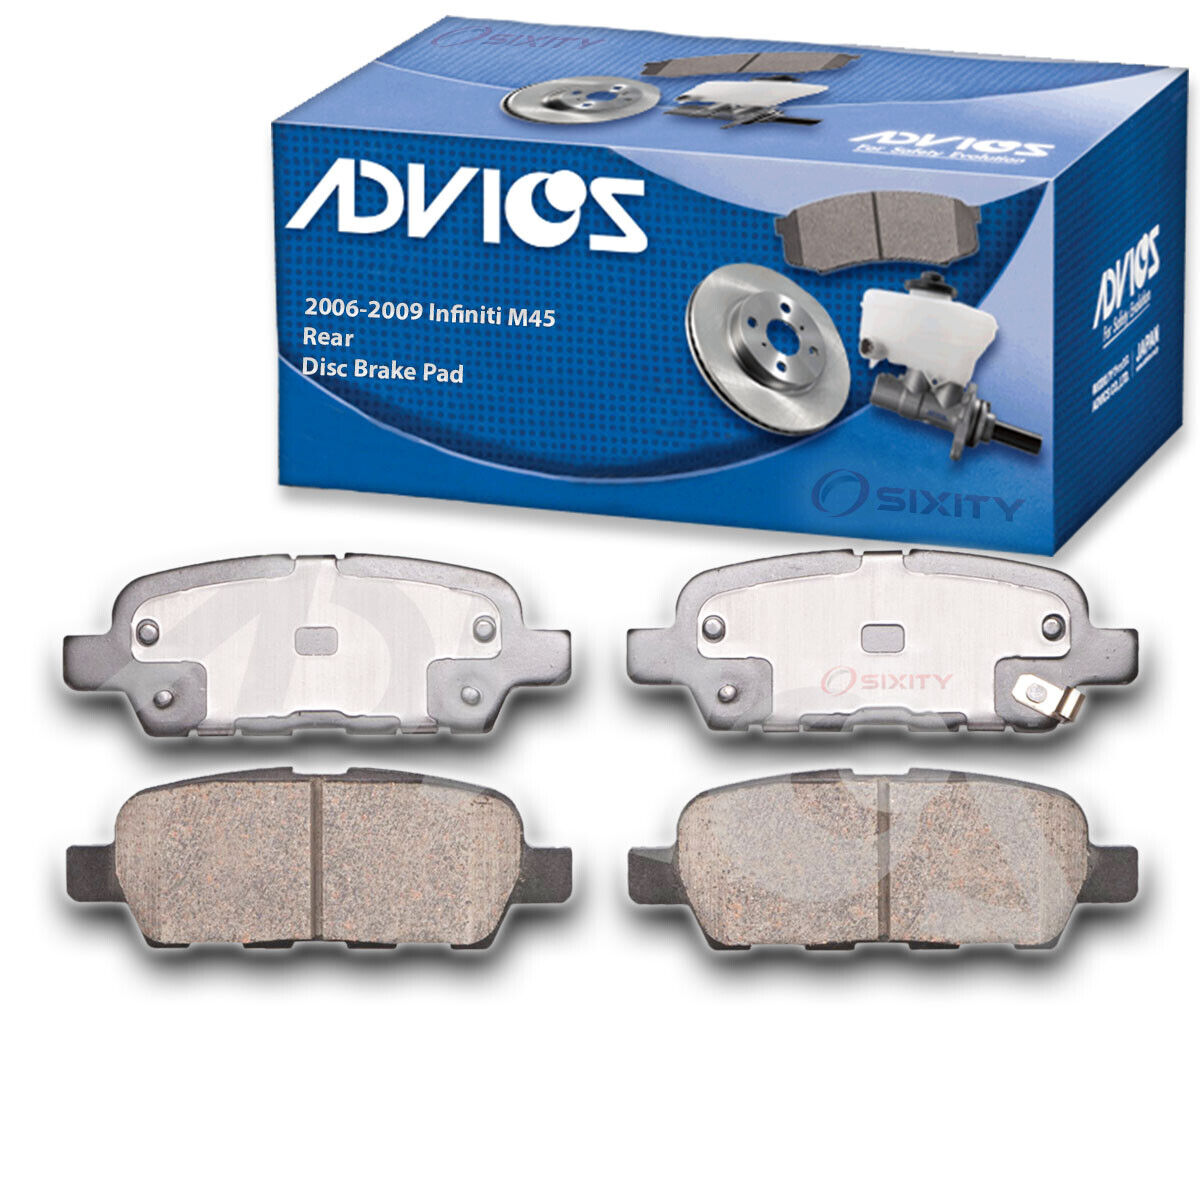 ADVICS Rear Disc Brake Pad Set for 2006-2009 Infiniti M45  - Braking Tire ut